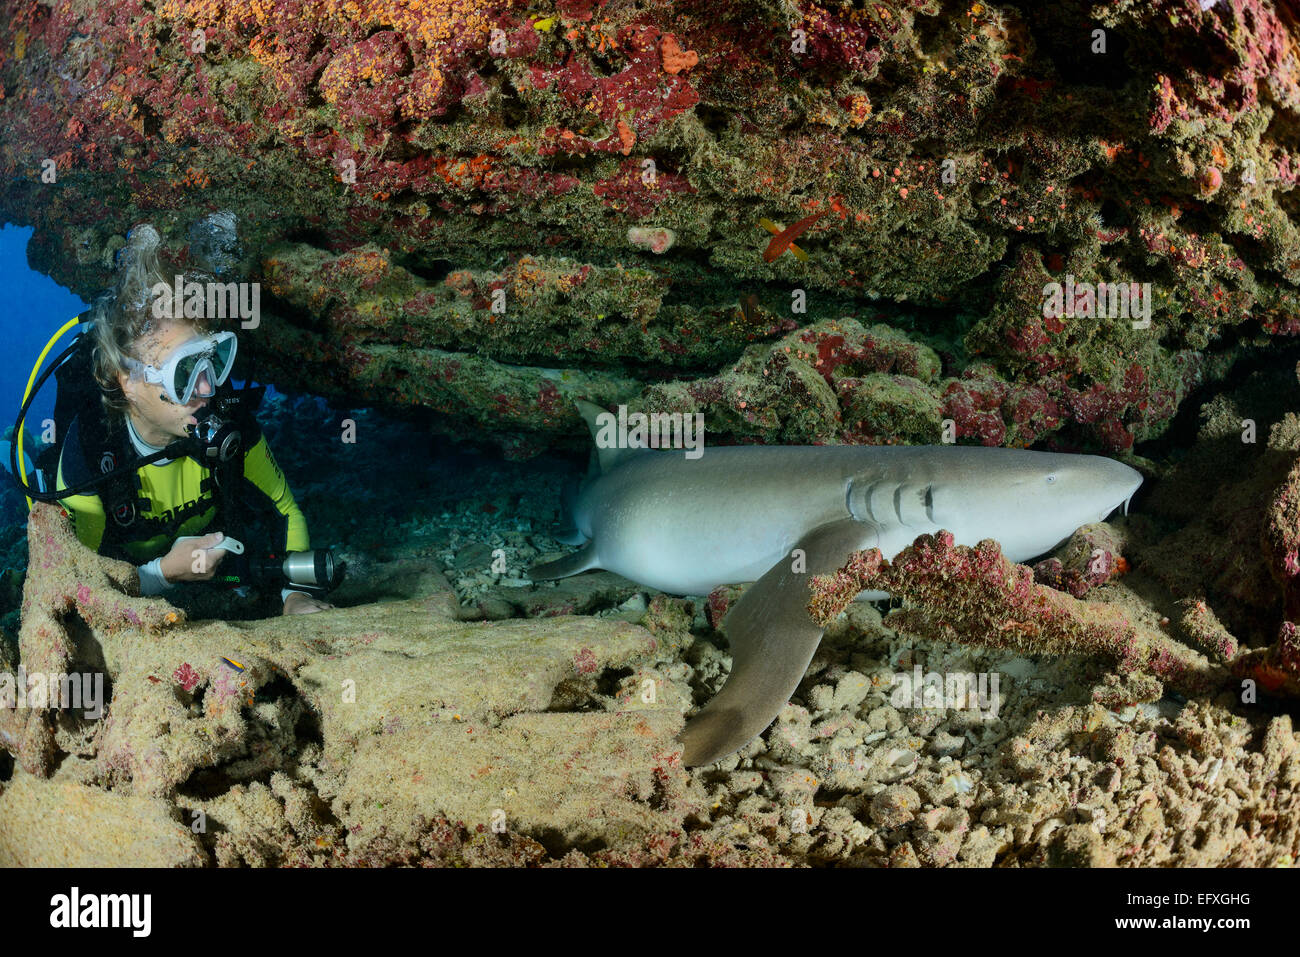 Nebrius ferrugineus, requin nourrice fauve et scuba diver, l'Atoll, Maldives, océan Indien Banque D'Images